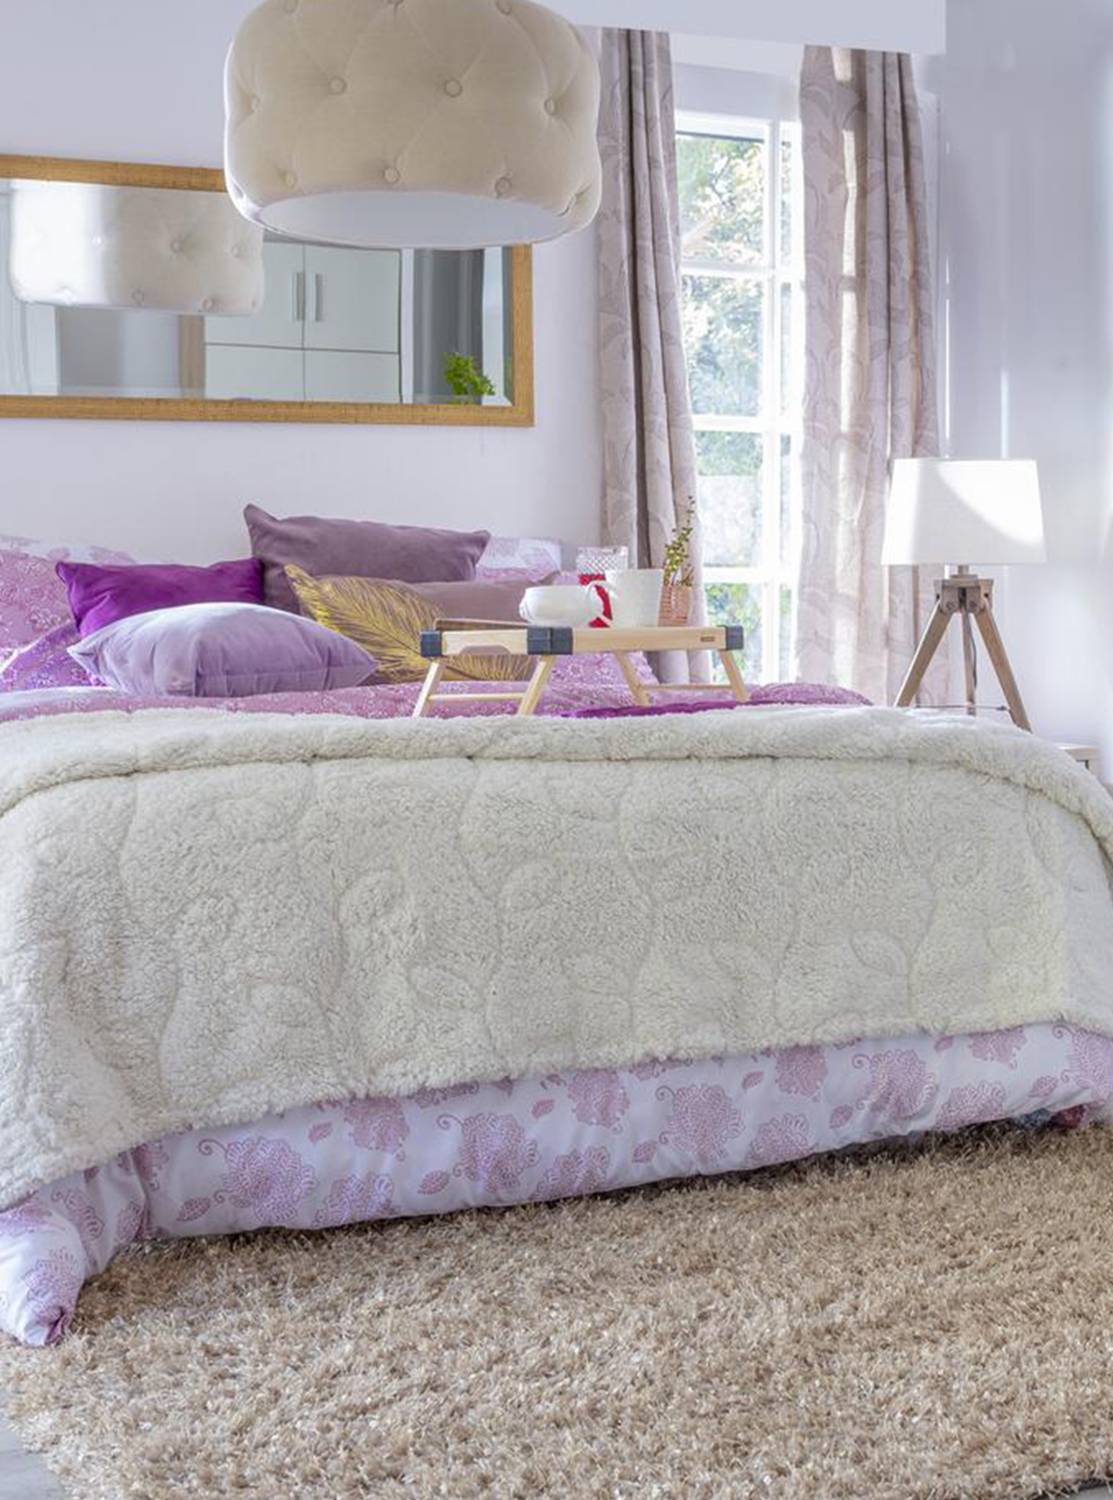 Dormitorio de paredes blancas con un gran espejo con marco dorado puesto horizontalmente sobre el cabecero de la cama. Las almohadas y cojines son morados, hay una gran manta blanca a los pies de la cama y en el suelo, una alfombra estilo shaggy beige.